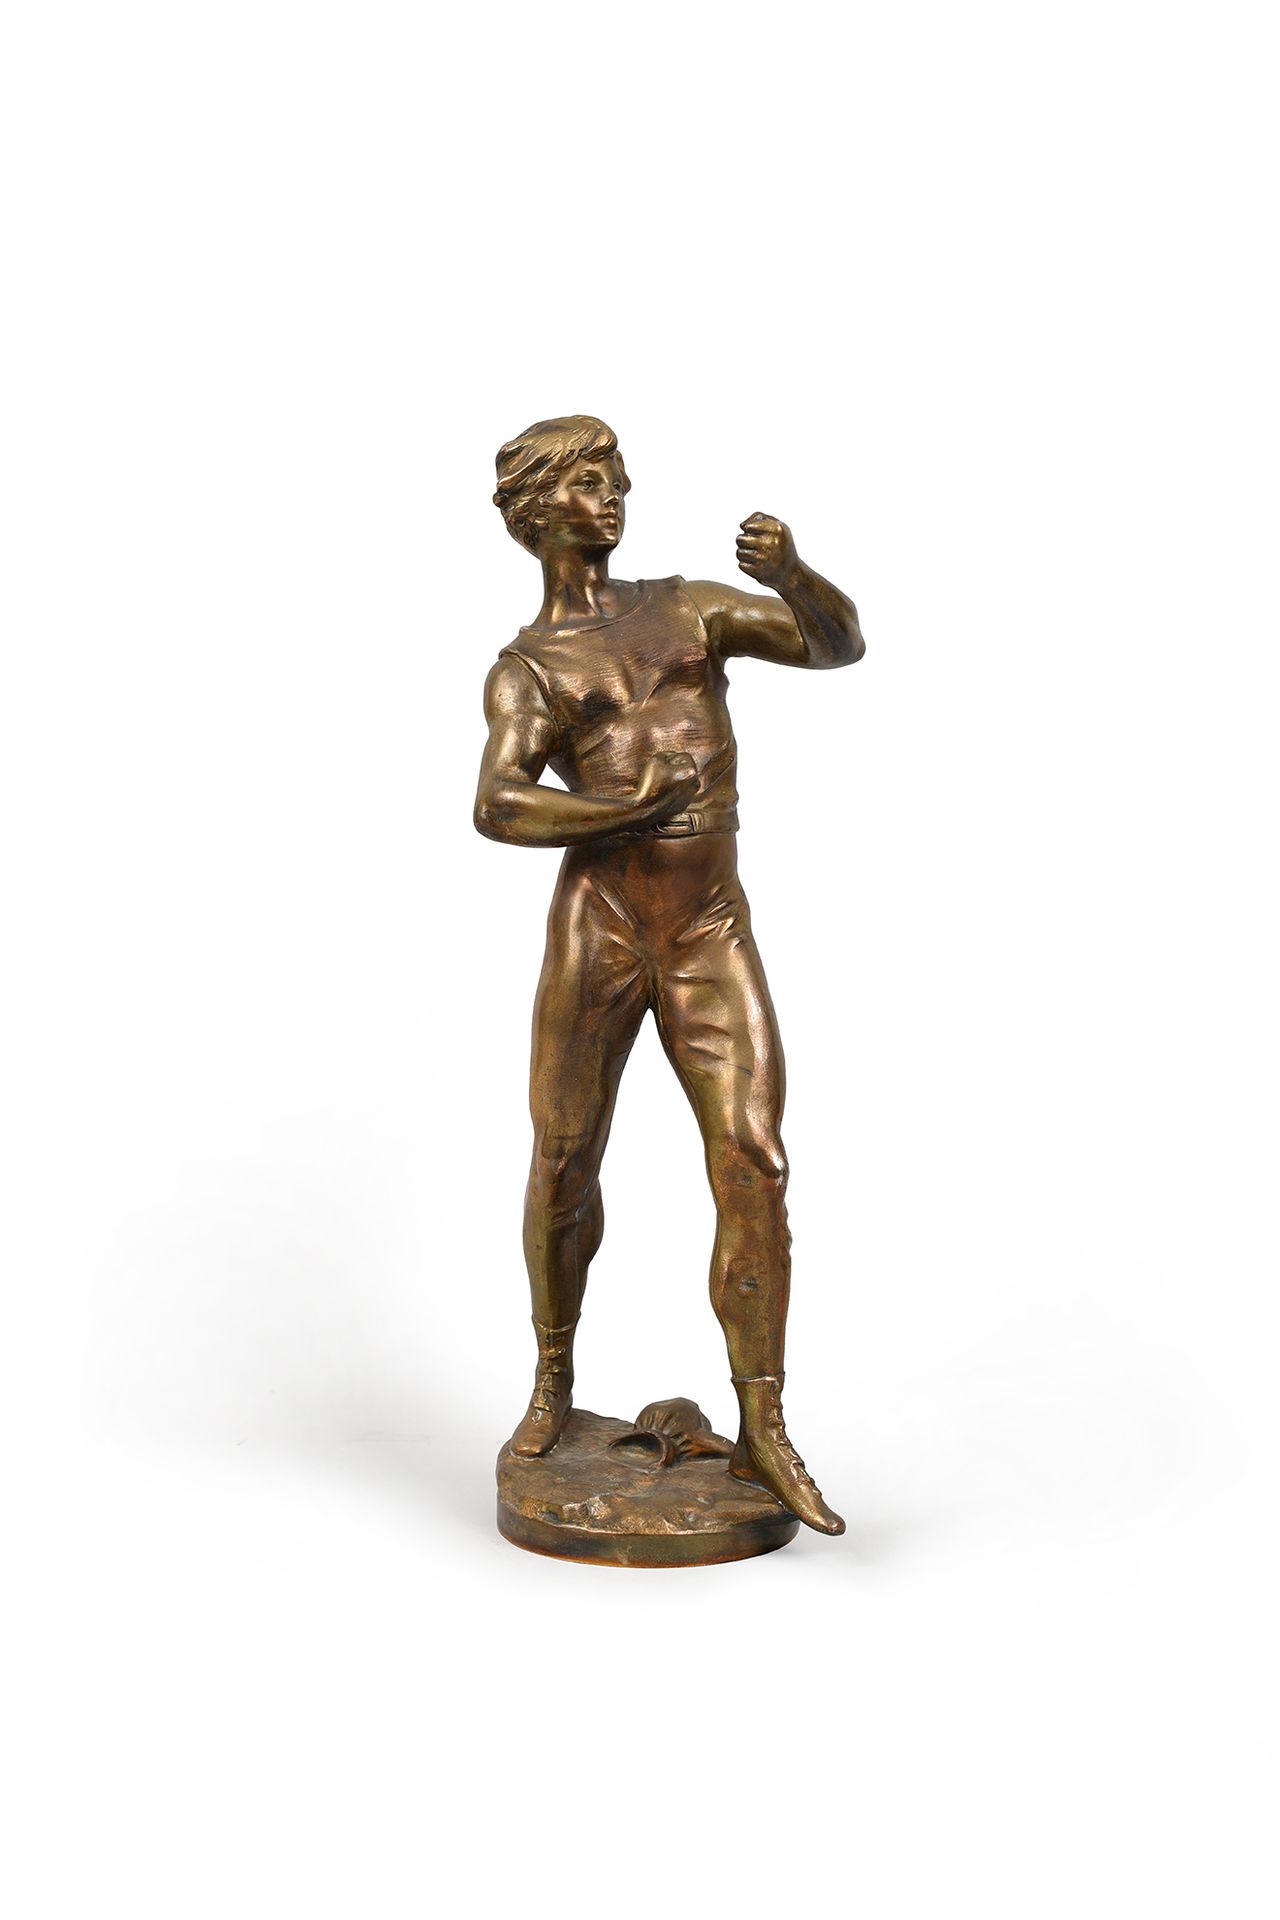 Null 雷古拉雕塑《年轻的拳击手》。约1900年。底座上有路易斯-莫罗（1855-1919）的签名。
高43厘米。